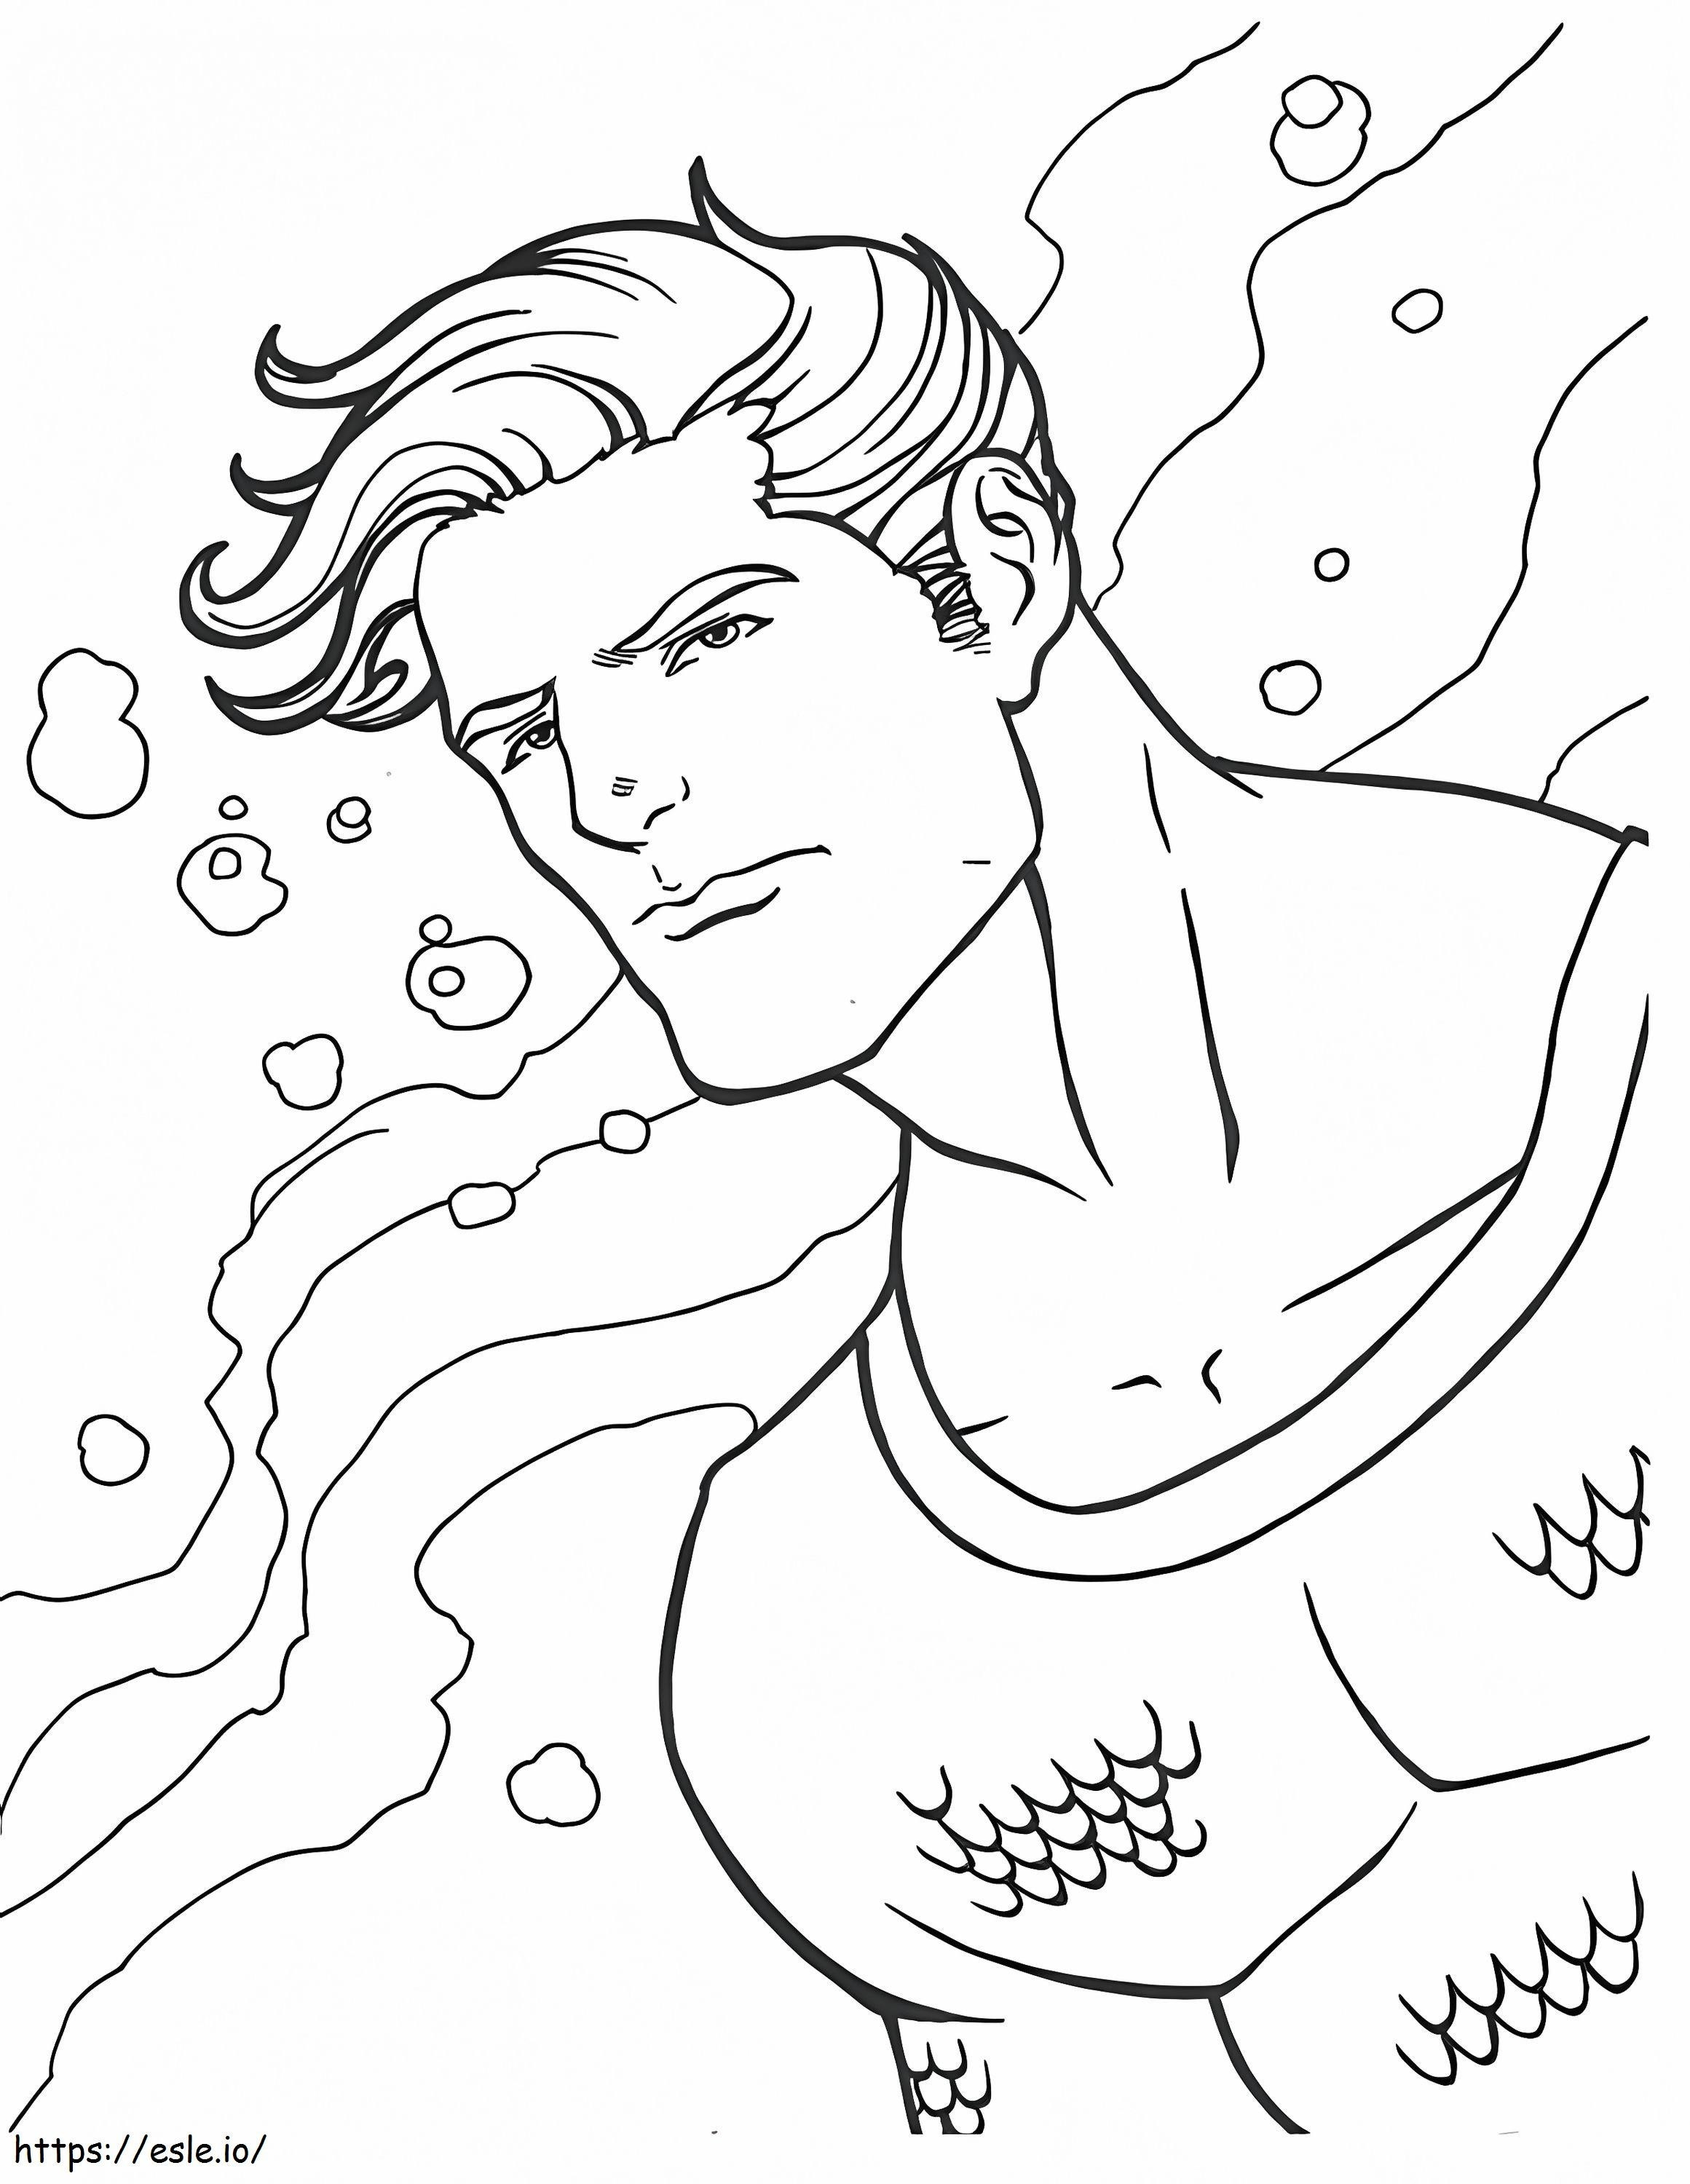 Young Aquaman coloring page